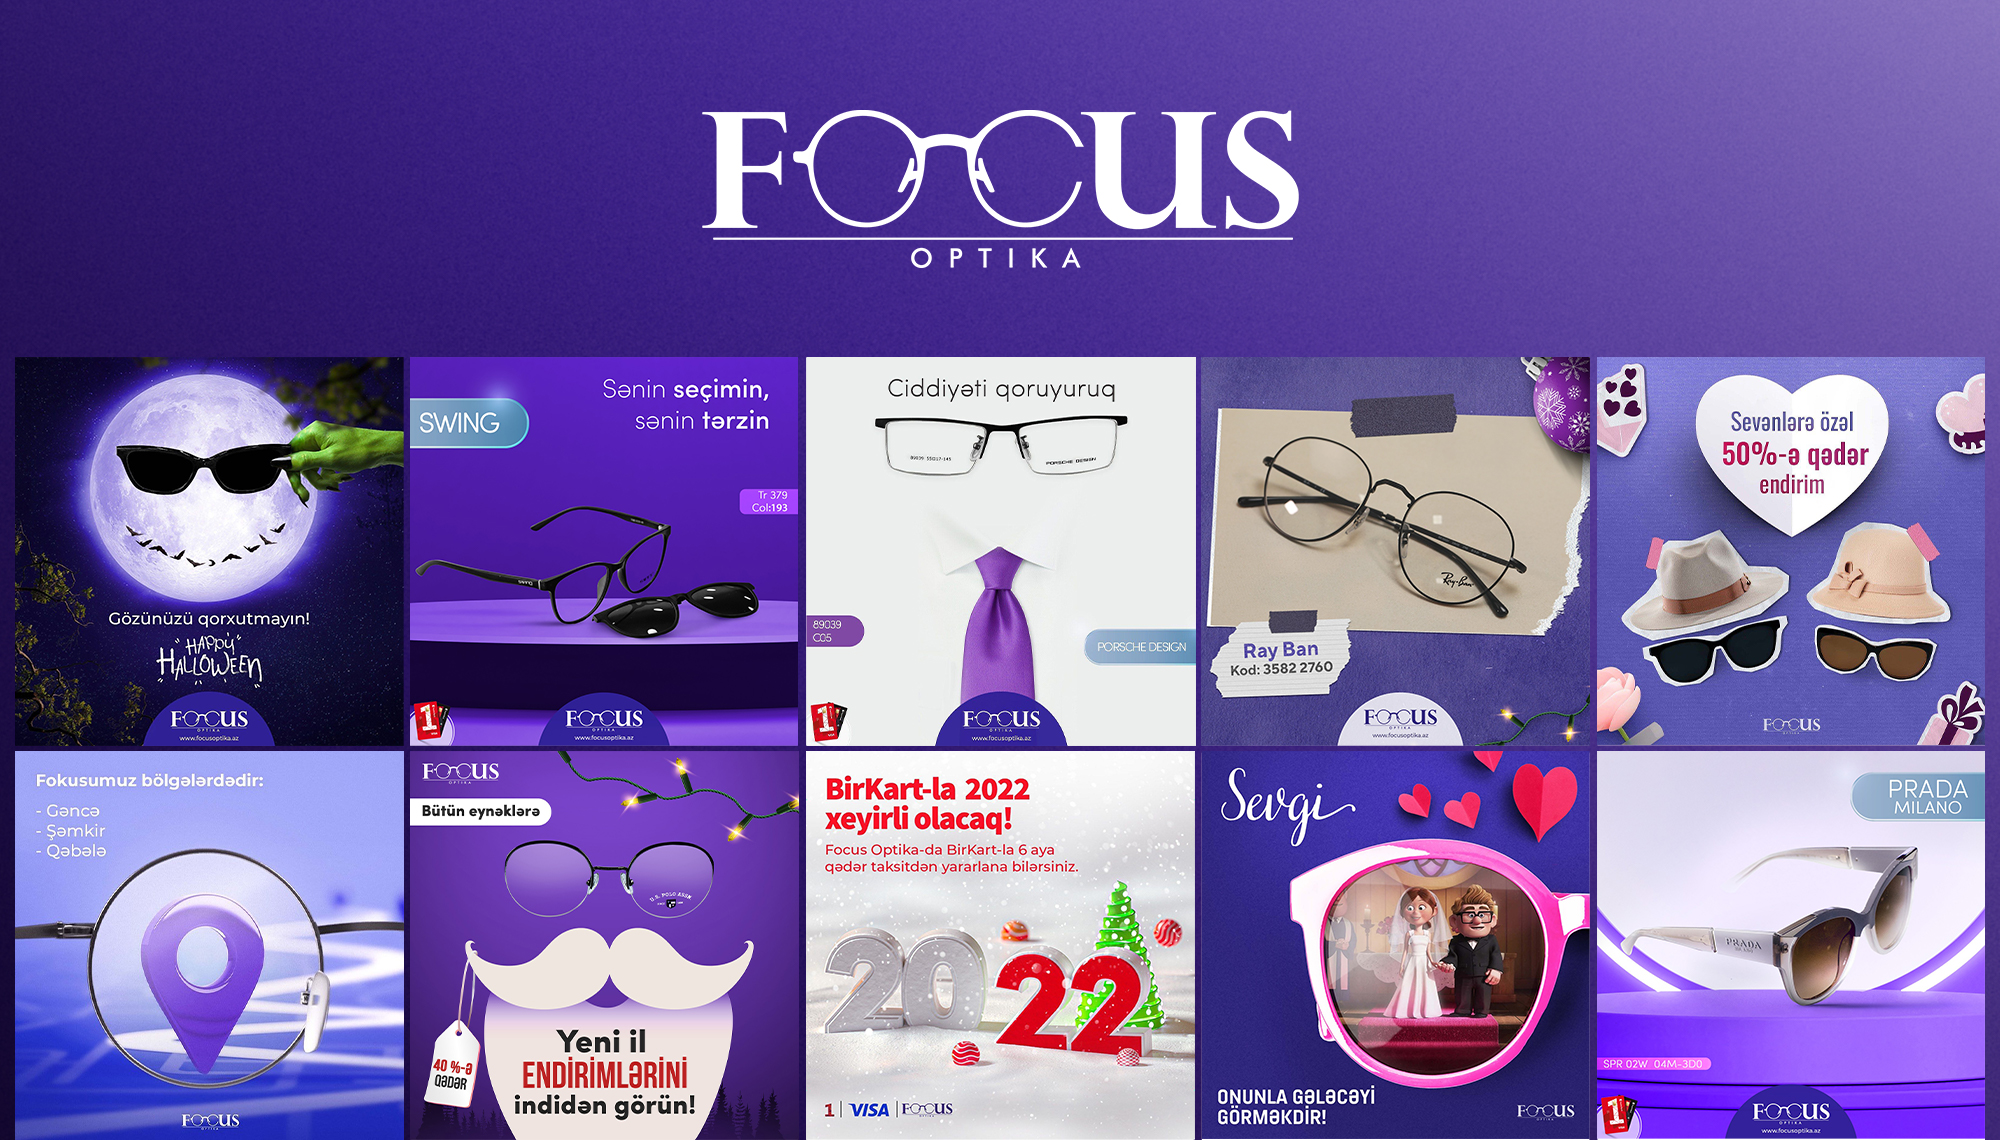 Focus Optics